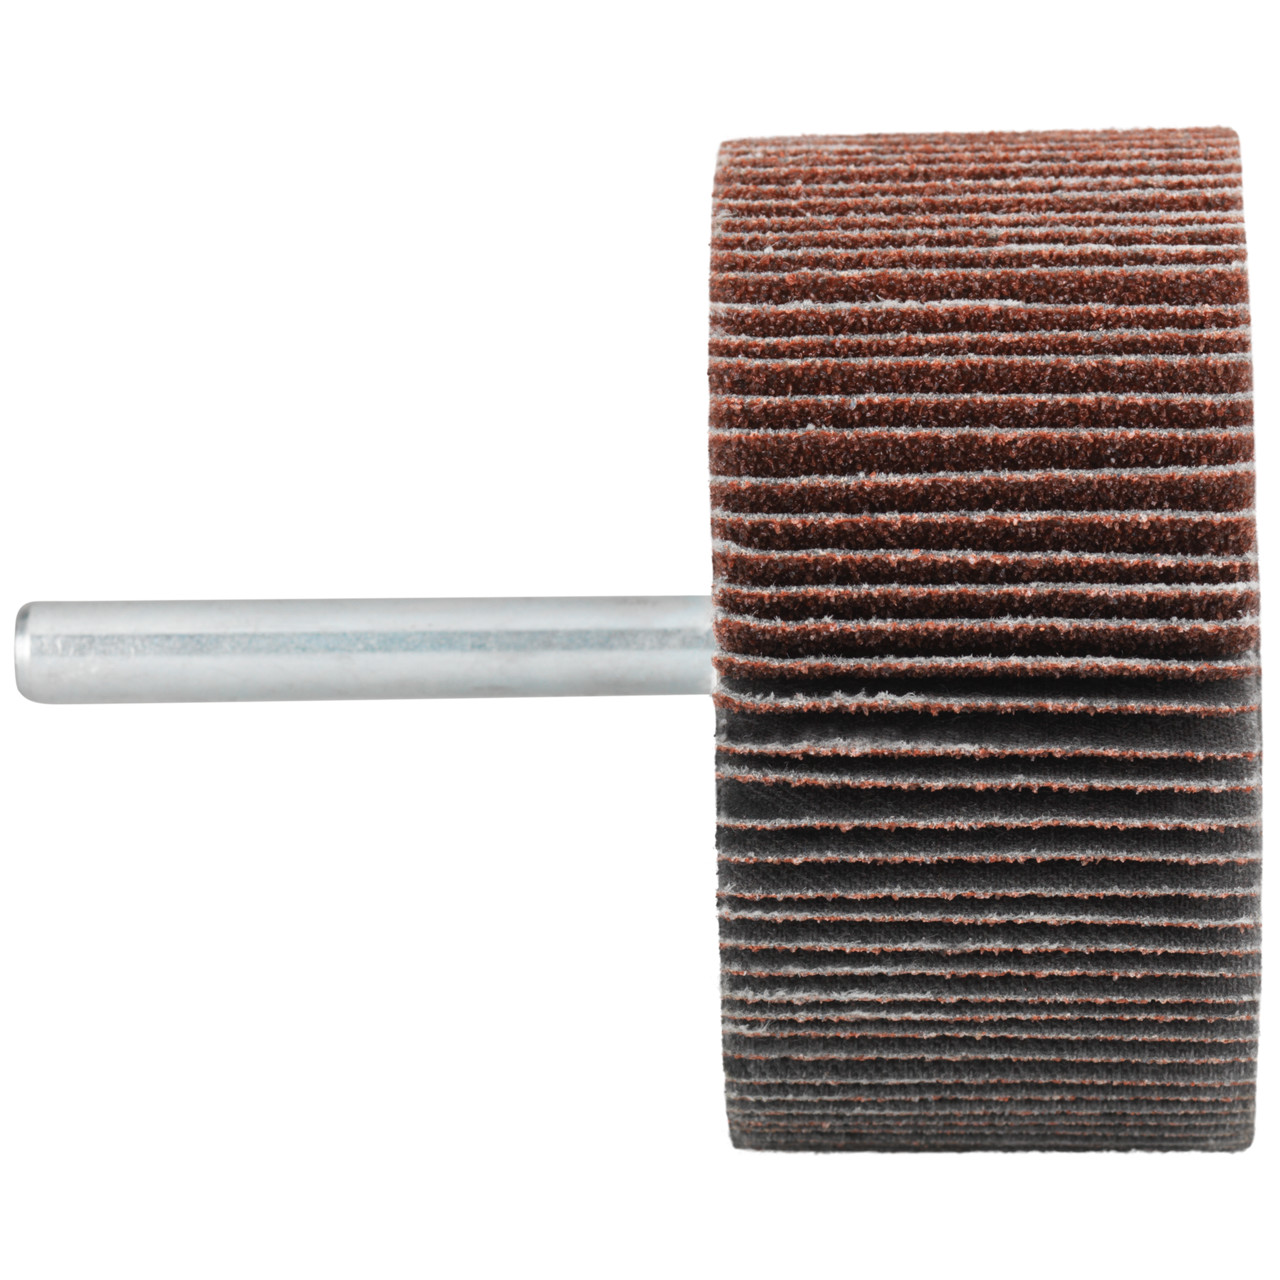 Tyrolit A-P01 C X Pennen DxD 80x30 Voor staal, roestvast staal en non-ferrometalen, P150, vorm: 52LA, Art. 816984